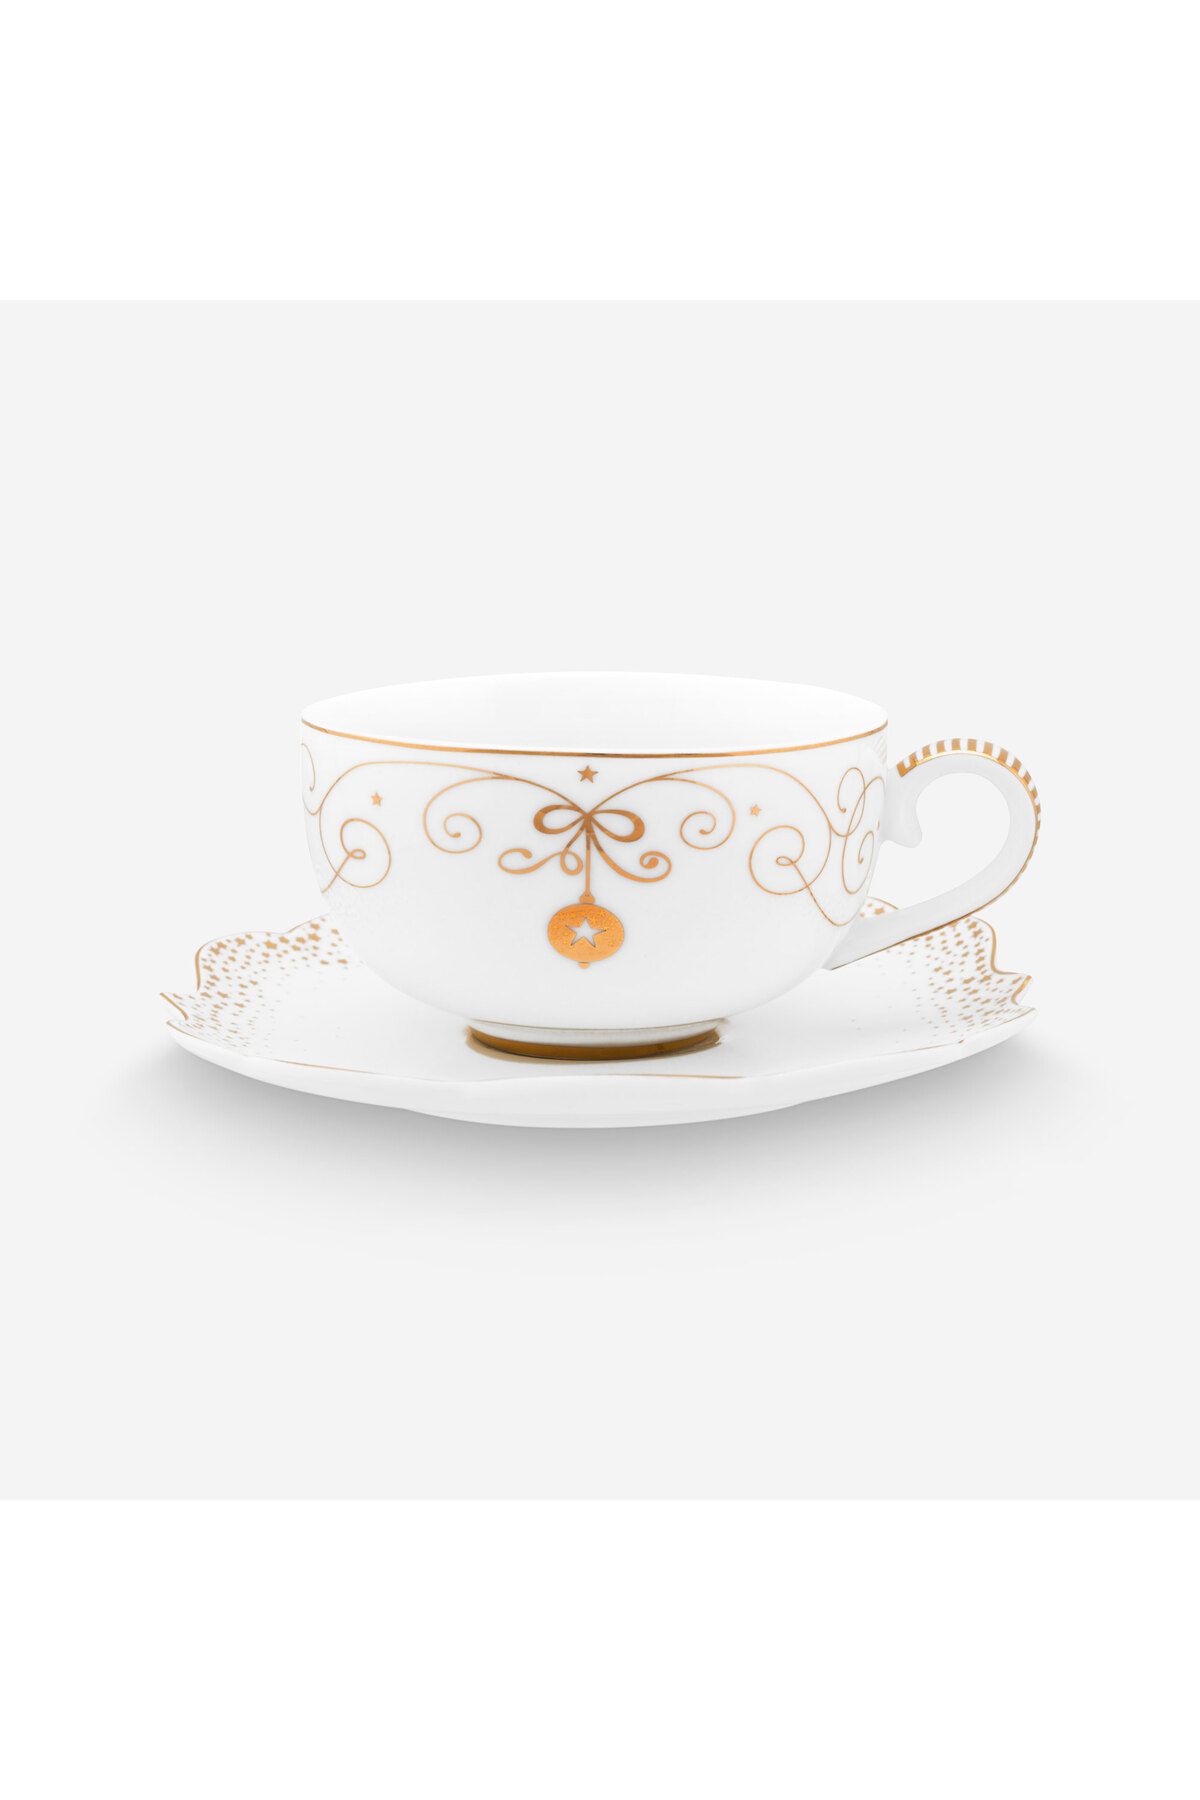 Pip Studio Royal Gold White Beyaz Porselen Kahve Fincanı 125 Ml